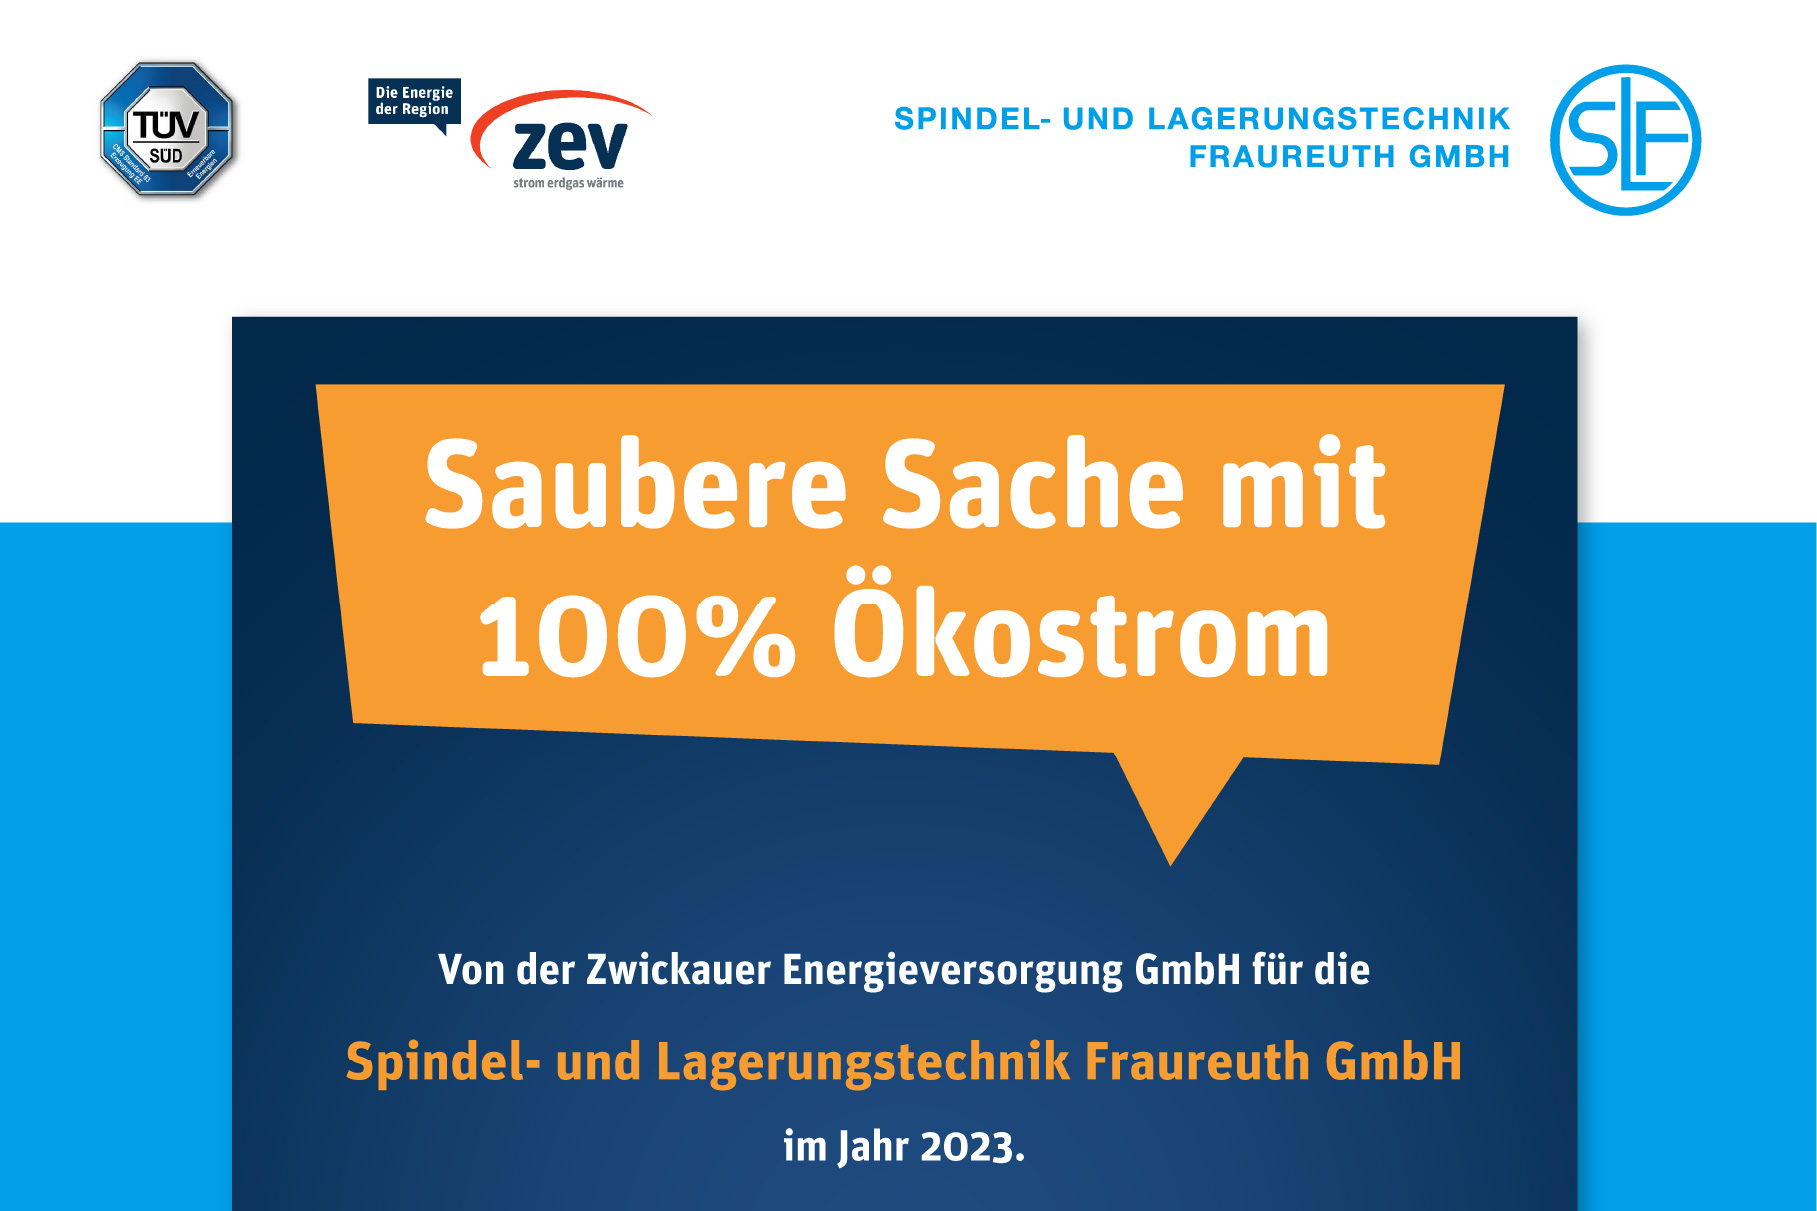 SLF Fraureuth GmbH bekommt das Grünstrom-Zertifikat von ZEV.